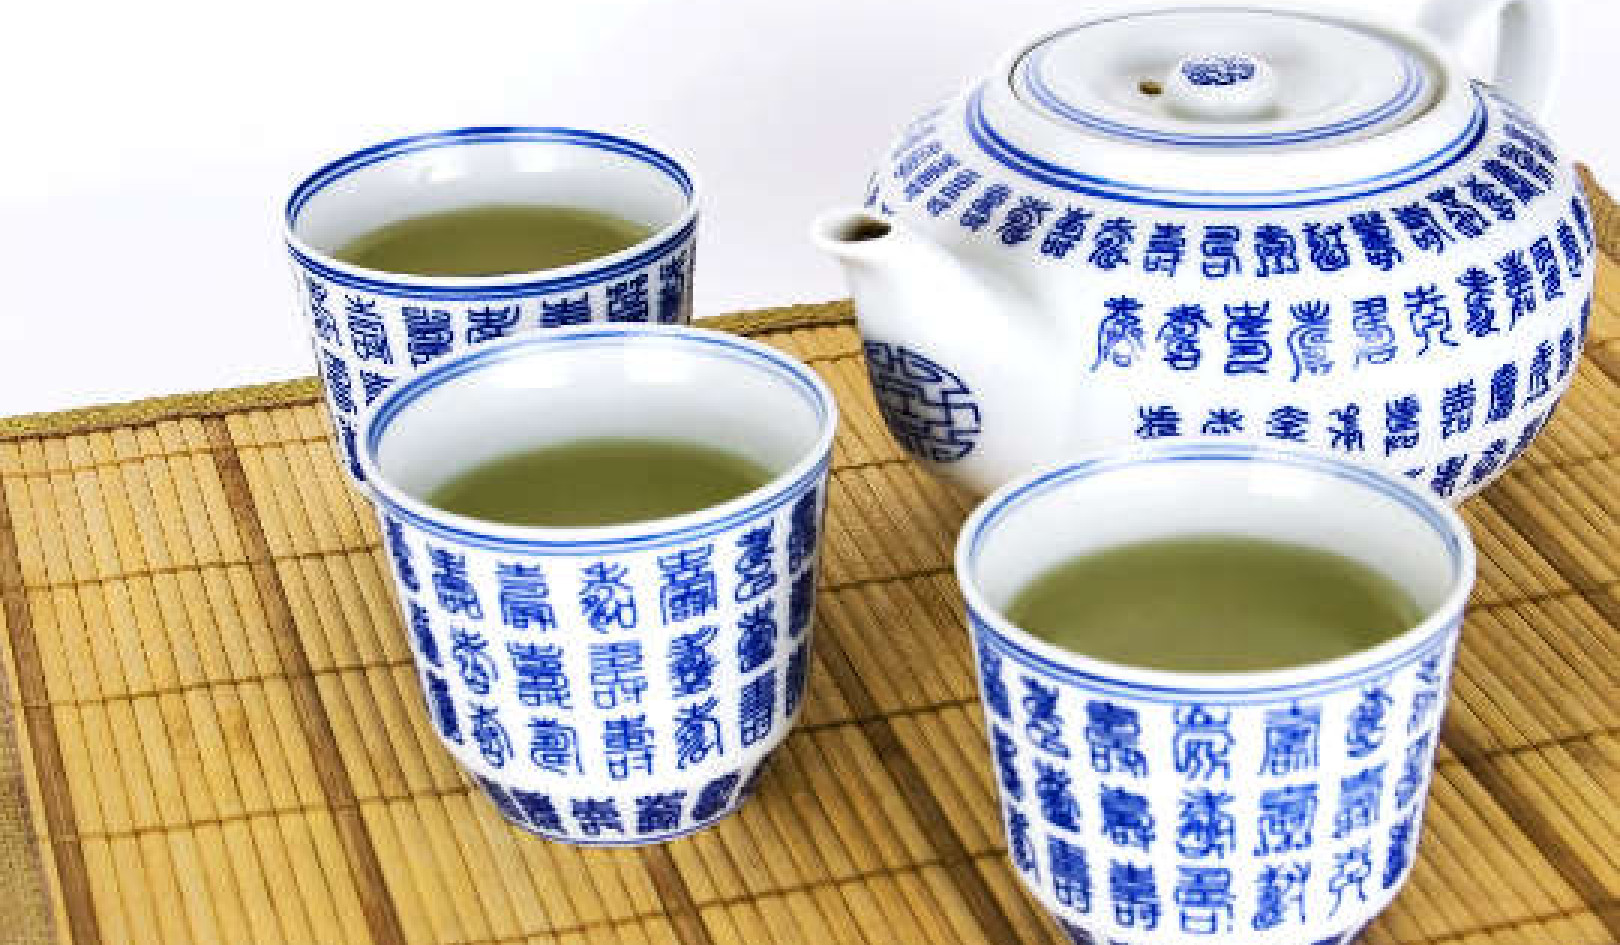 هل يمكن للشاي الأخضر أن يضر بصحتك؟